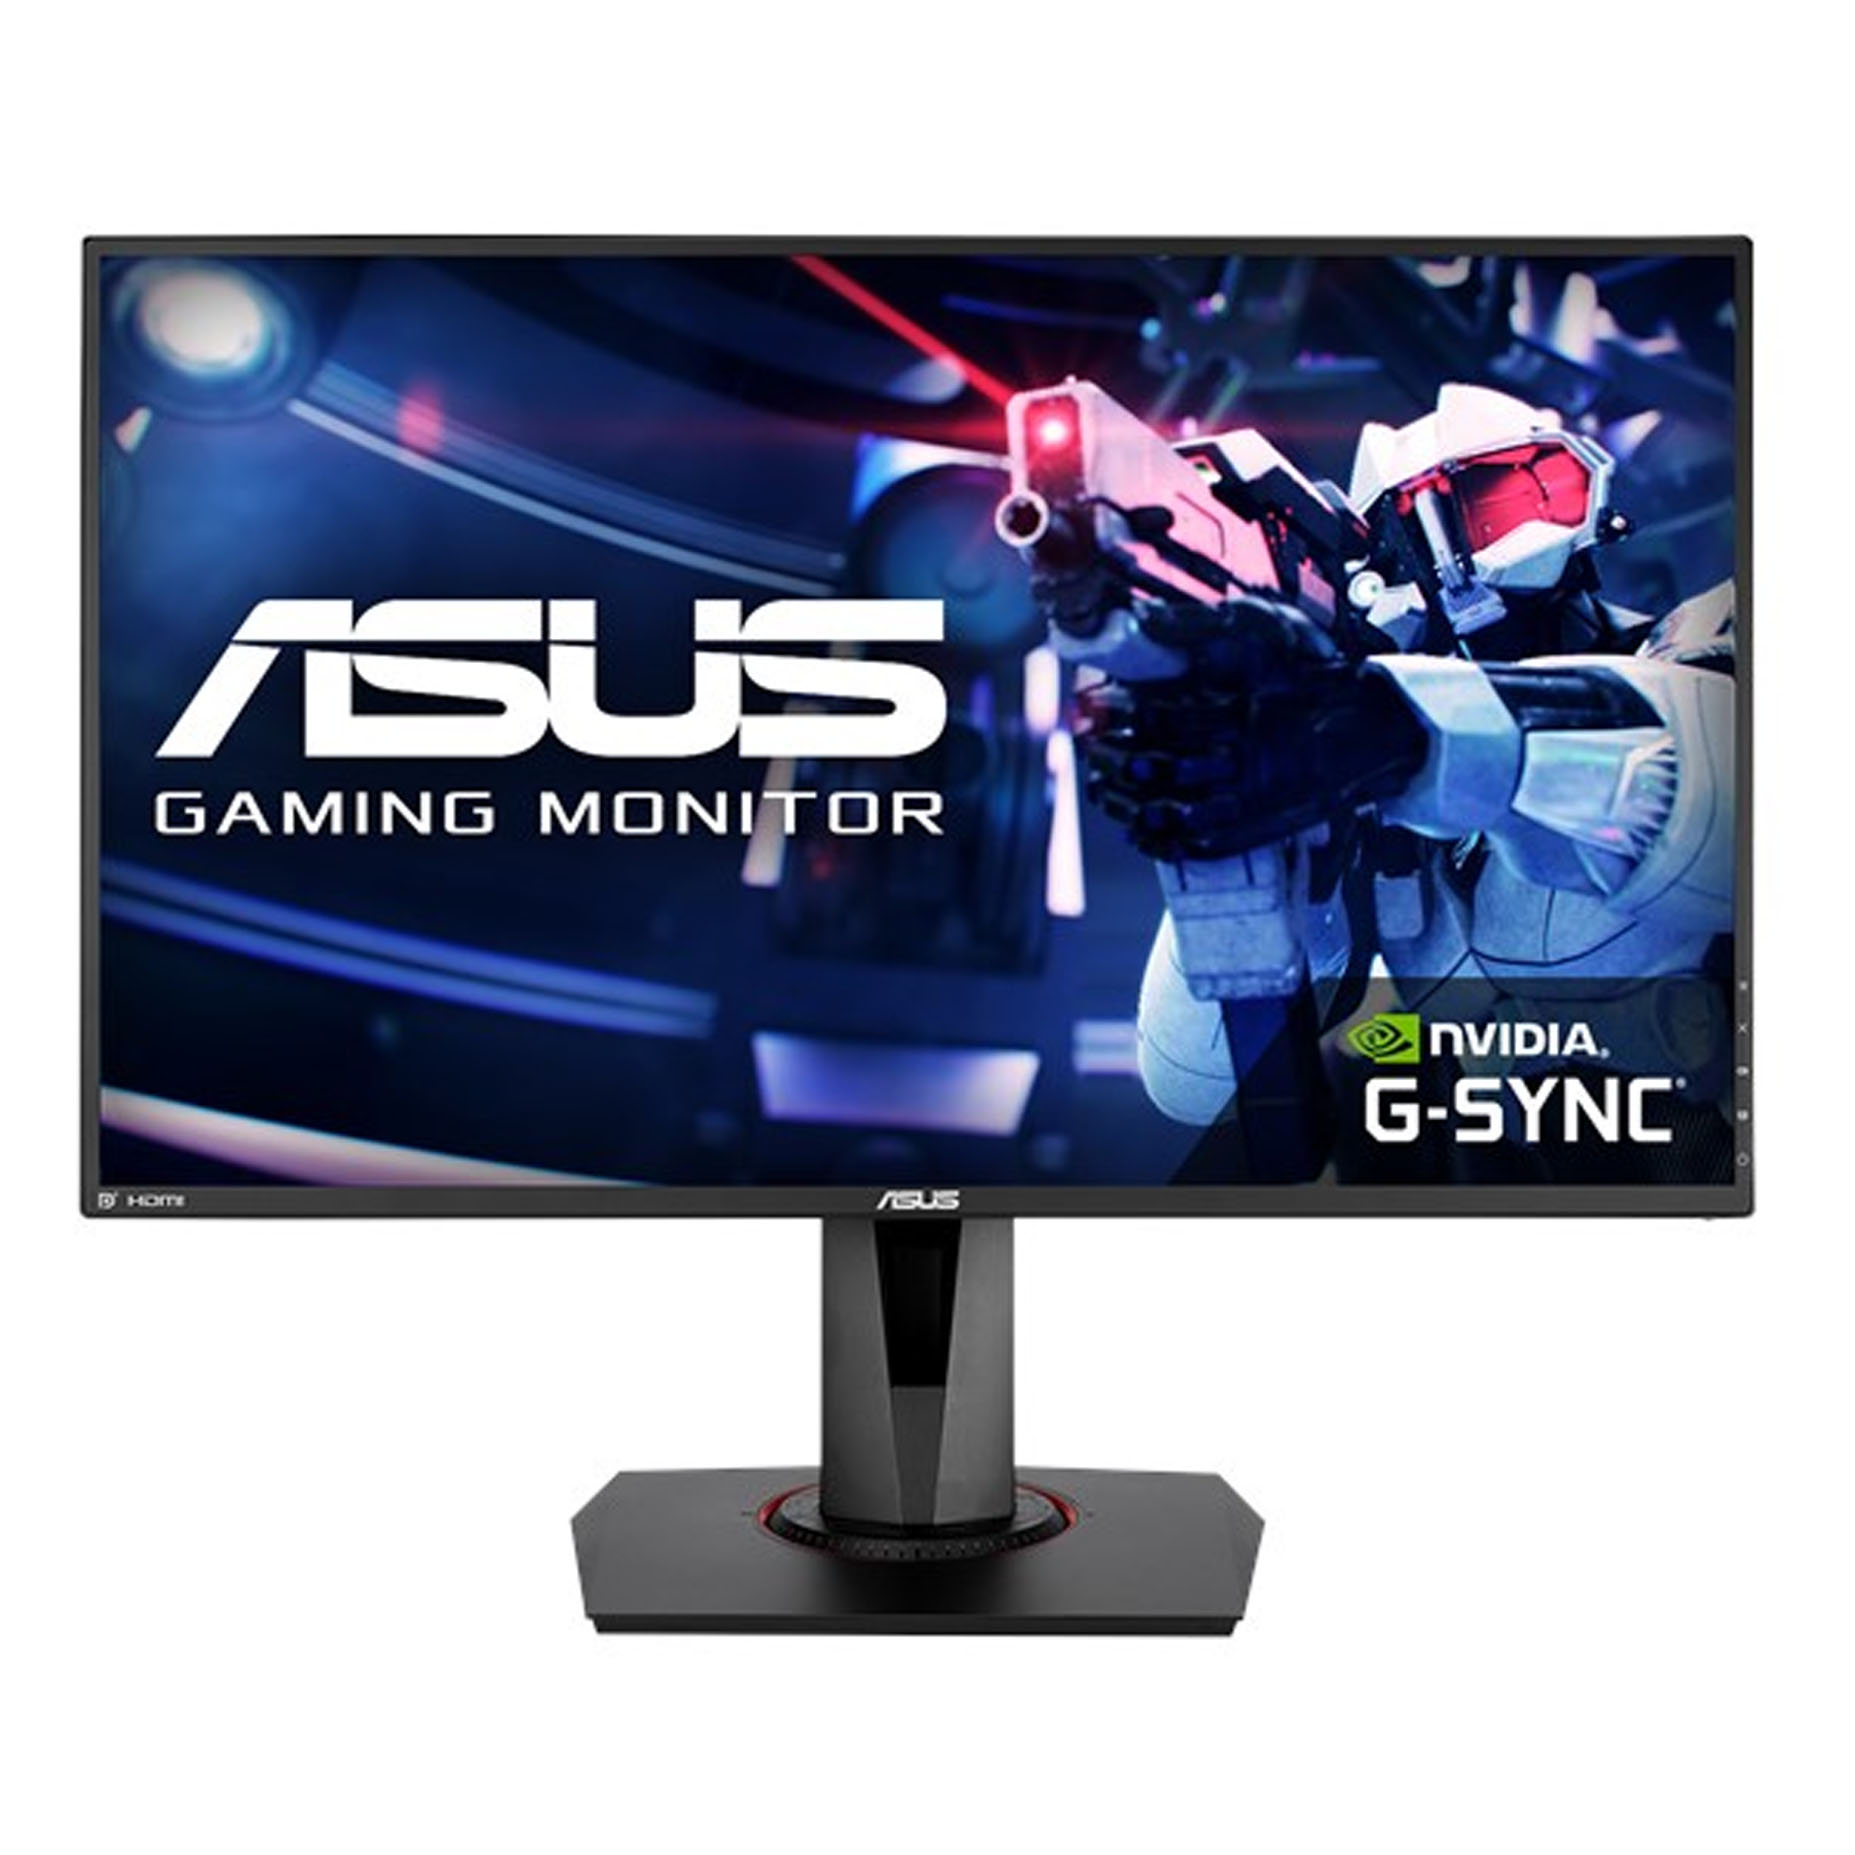 Harga ASUS VG258QR Gaming Monitor 25 Inch